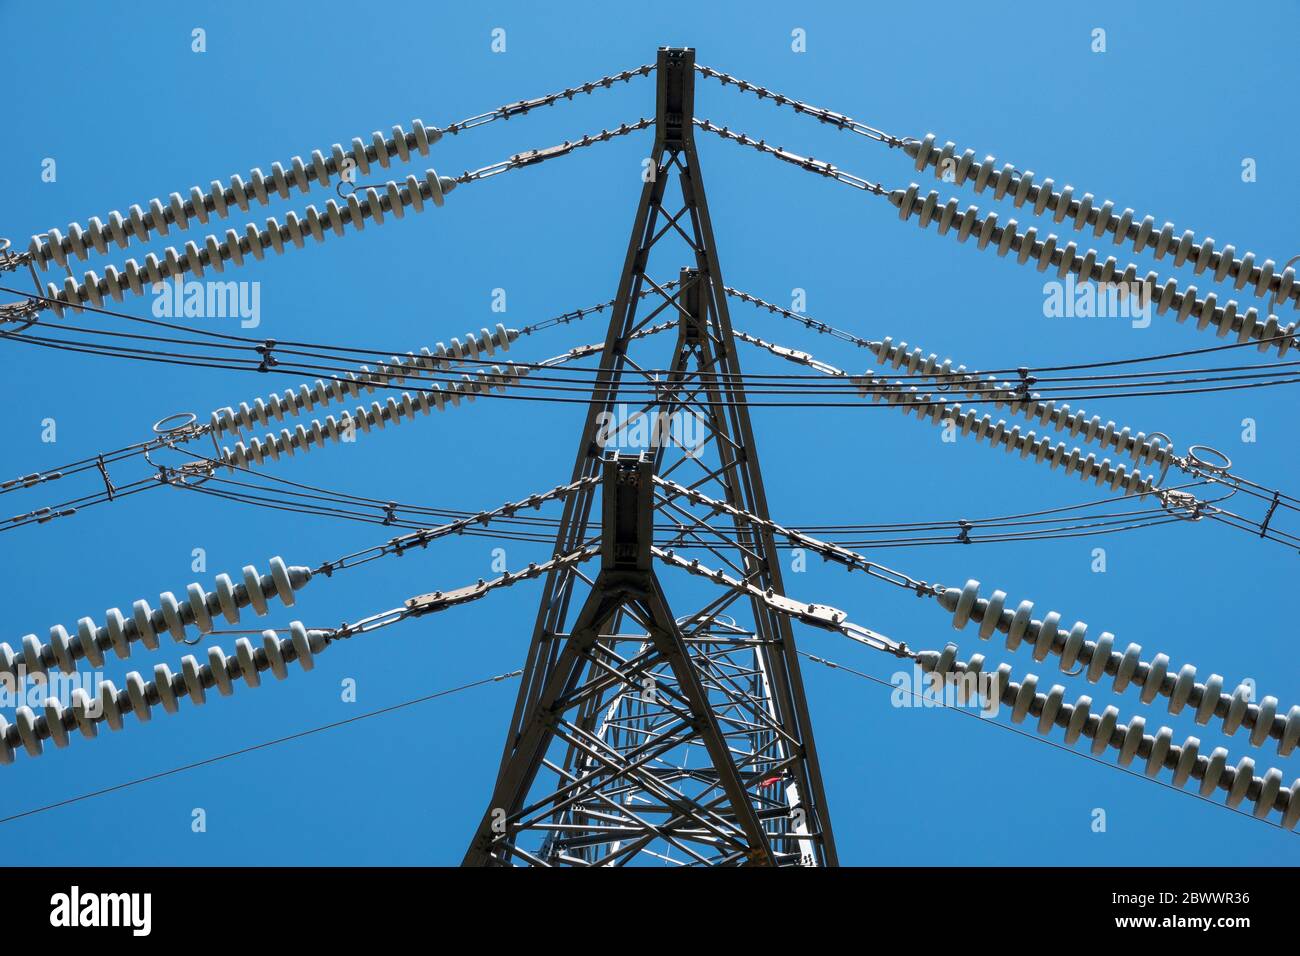 Detalles de las secciones de un pilón de electricidad de alta tensión contra un cielo azul intenso Foto de stock